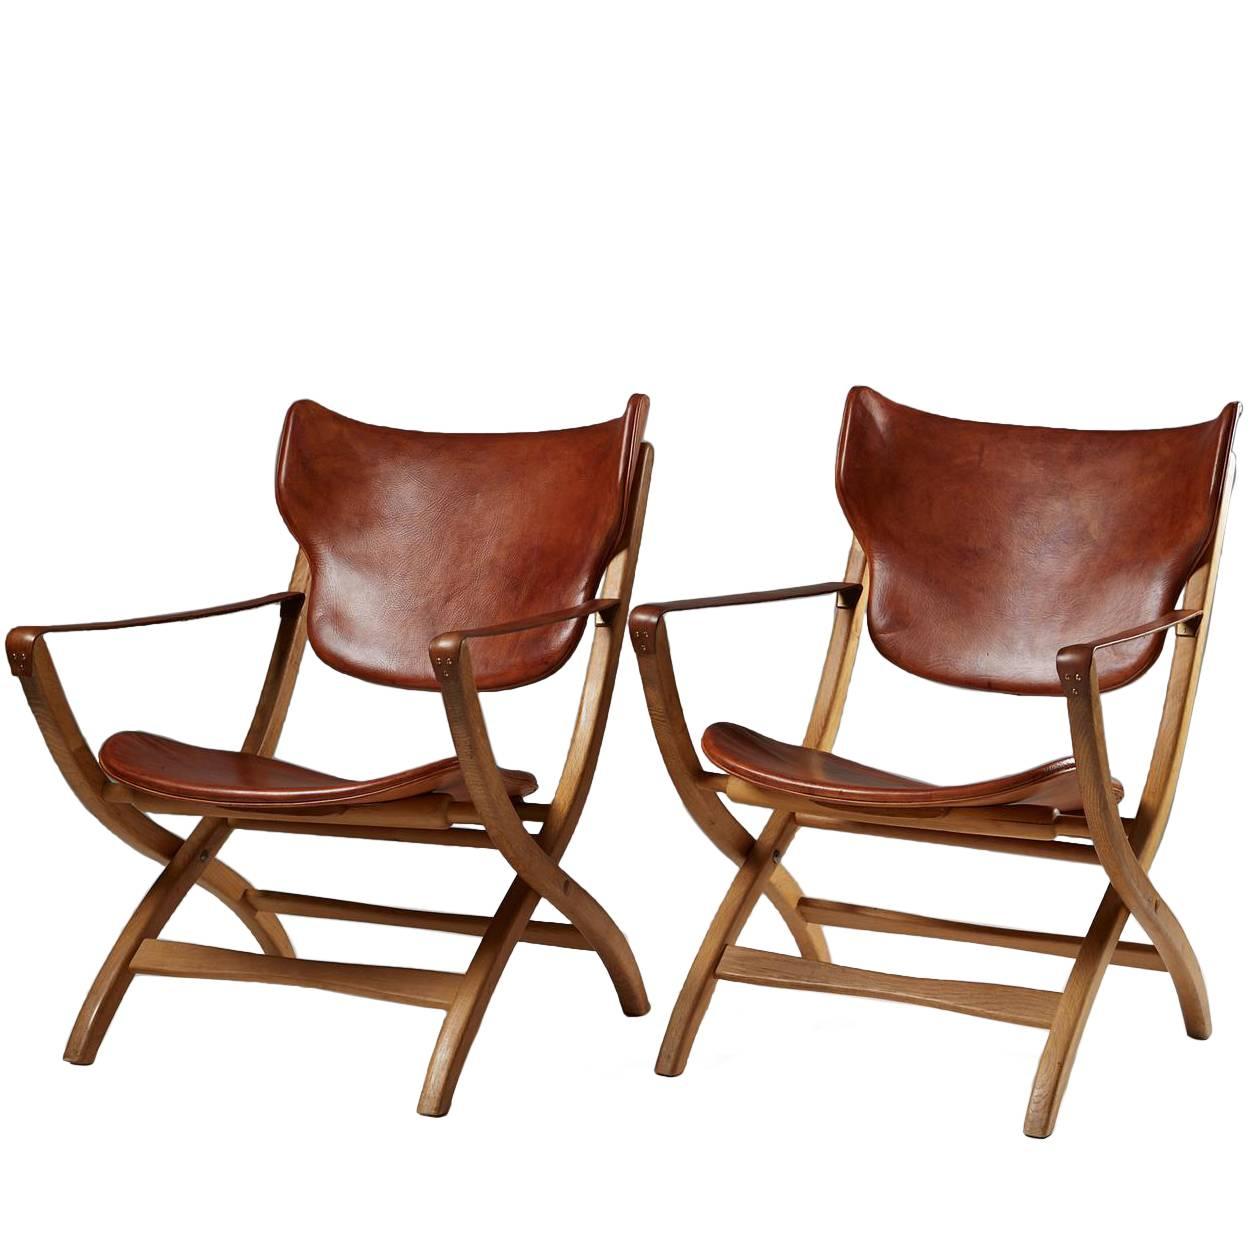 Folding Armchair “Egyptian Chair” Designed by Poul Hundevad, Denmark, 1950s